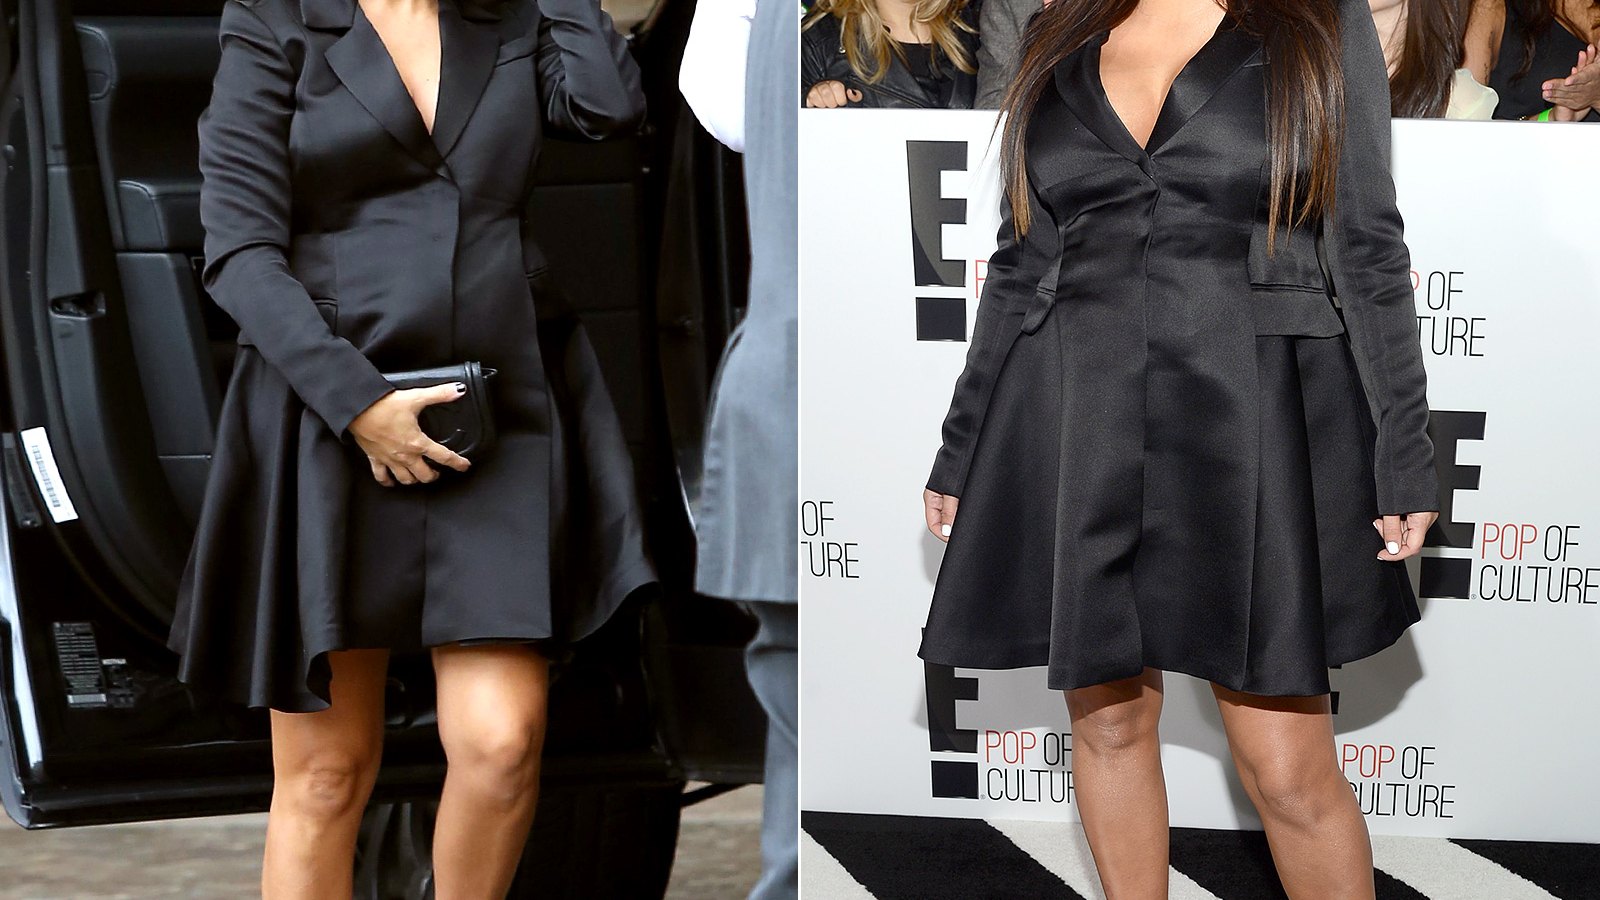 Kourtney Kardashian Borrows Kim's Maternity Dress For Her Baby Shower